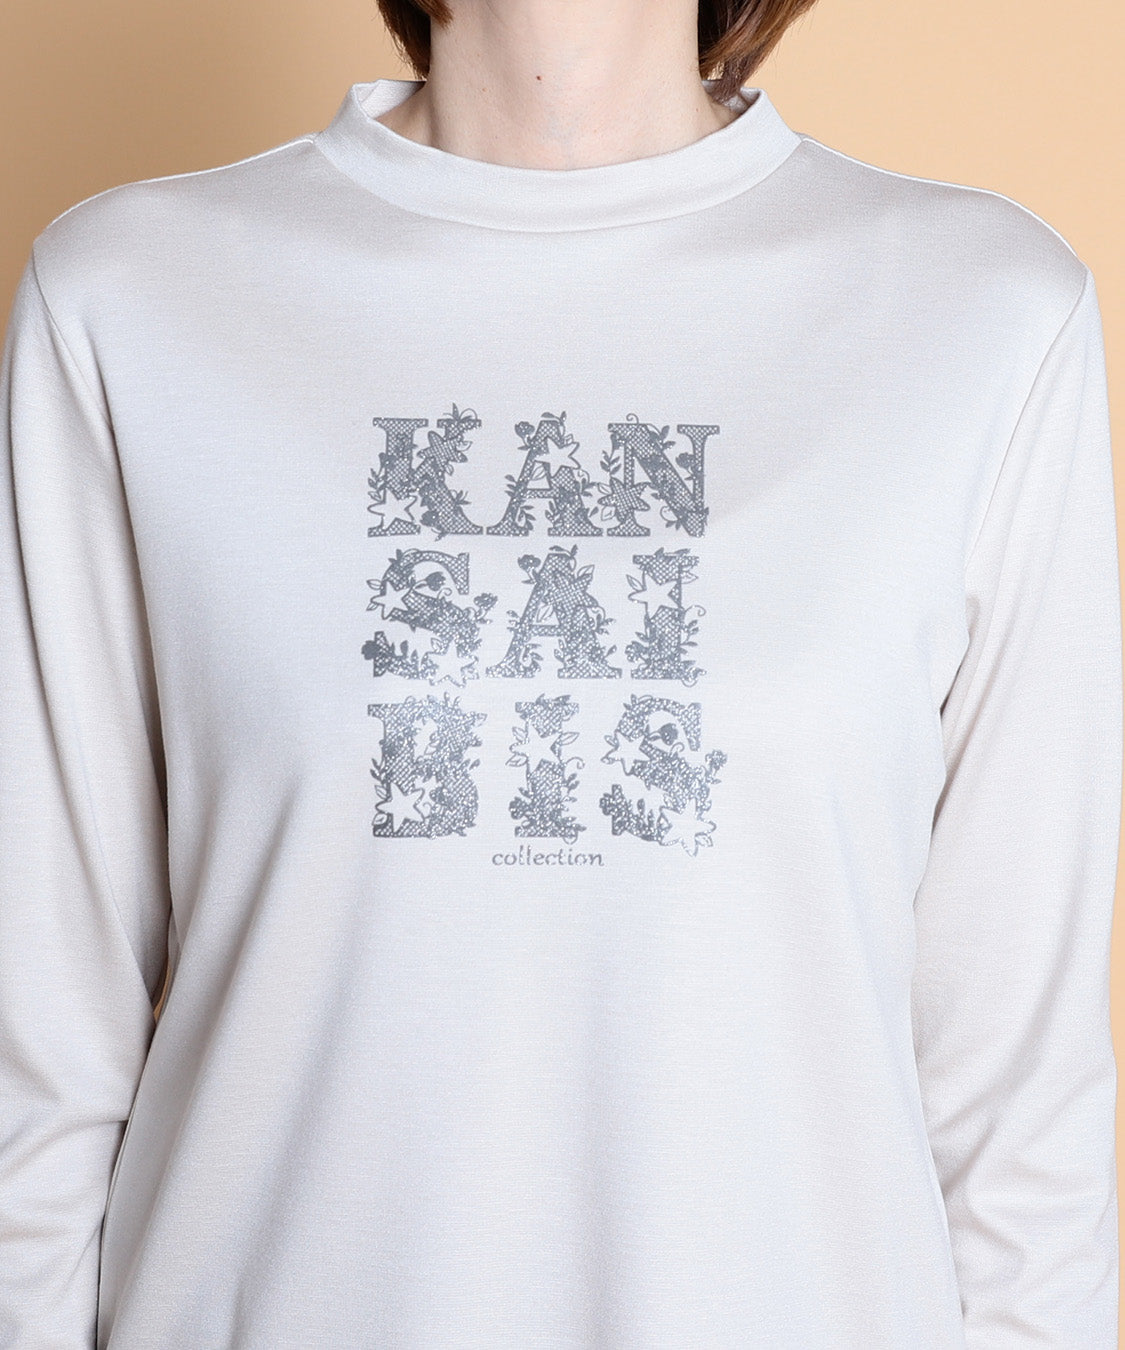  KANSAI BIS(カンサイビス) KANSAI BISロゴロングTシャツ 